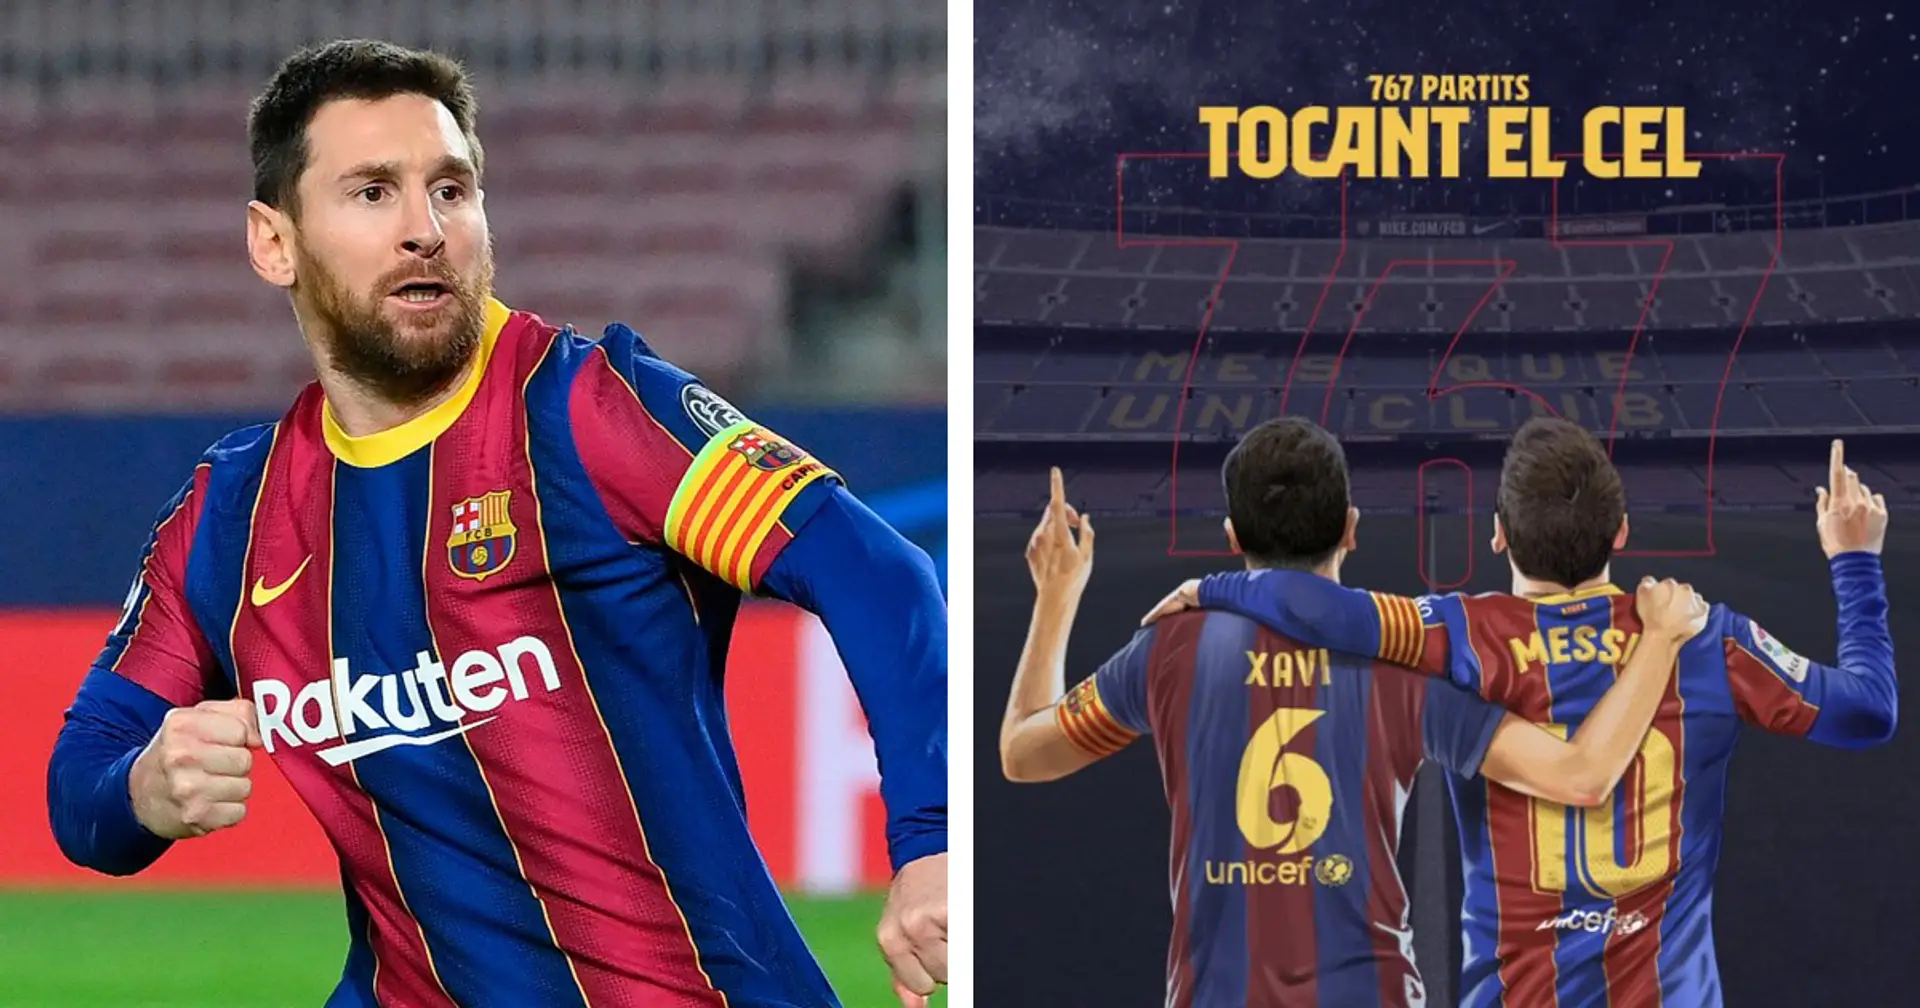 OFICIAL: Messi iguala el récord de Xavi como el jugador con más partidos en la historia del Barça